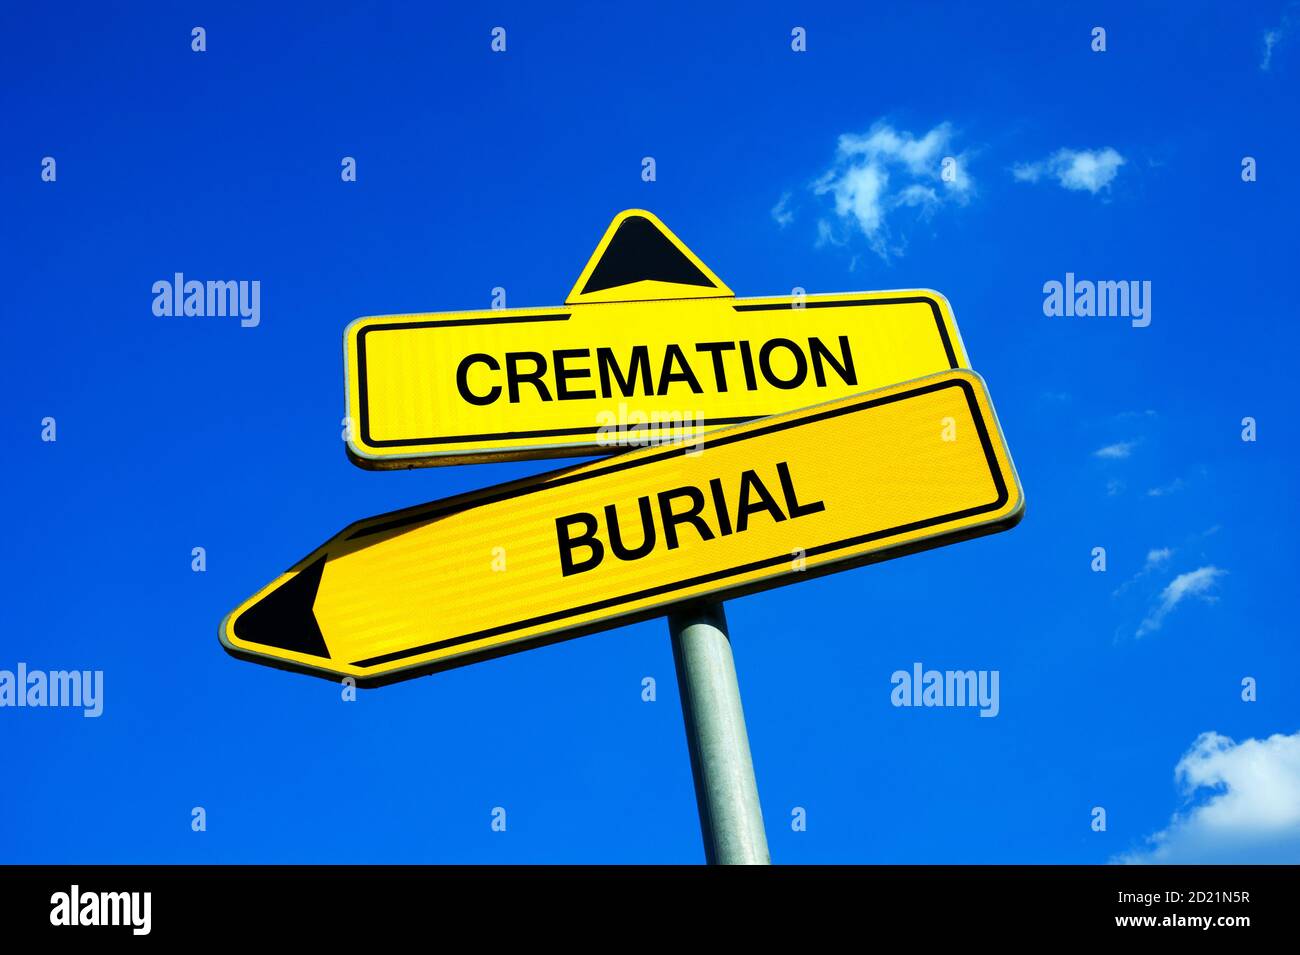 Einäscherung vs Begräbnis - Verkehrszeichen mit zwei Optionen - eingeäschert oder nach dem Tod begraben. Frage der Religion und der Begräbniskultur Stockfoto